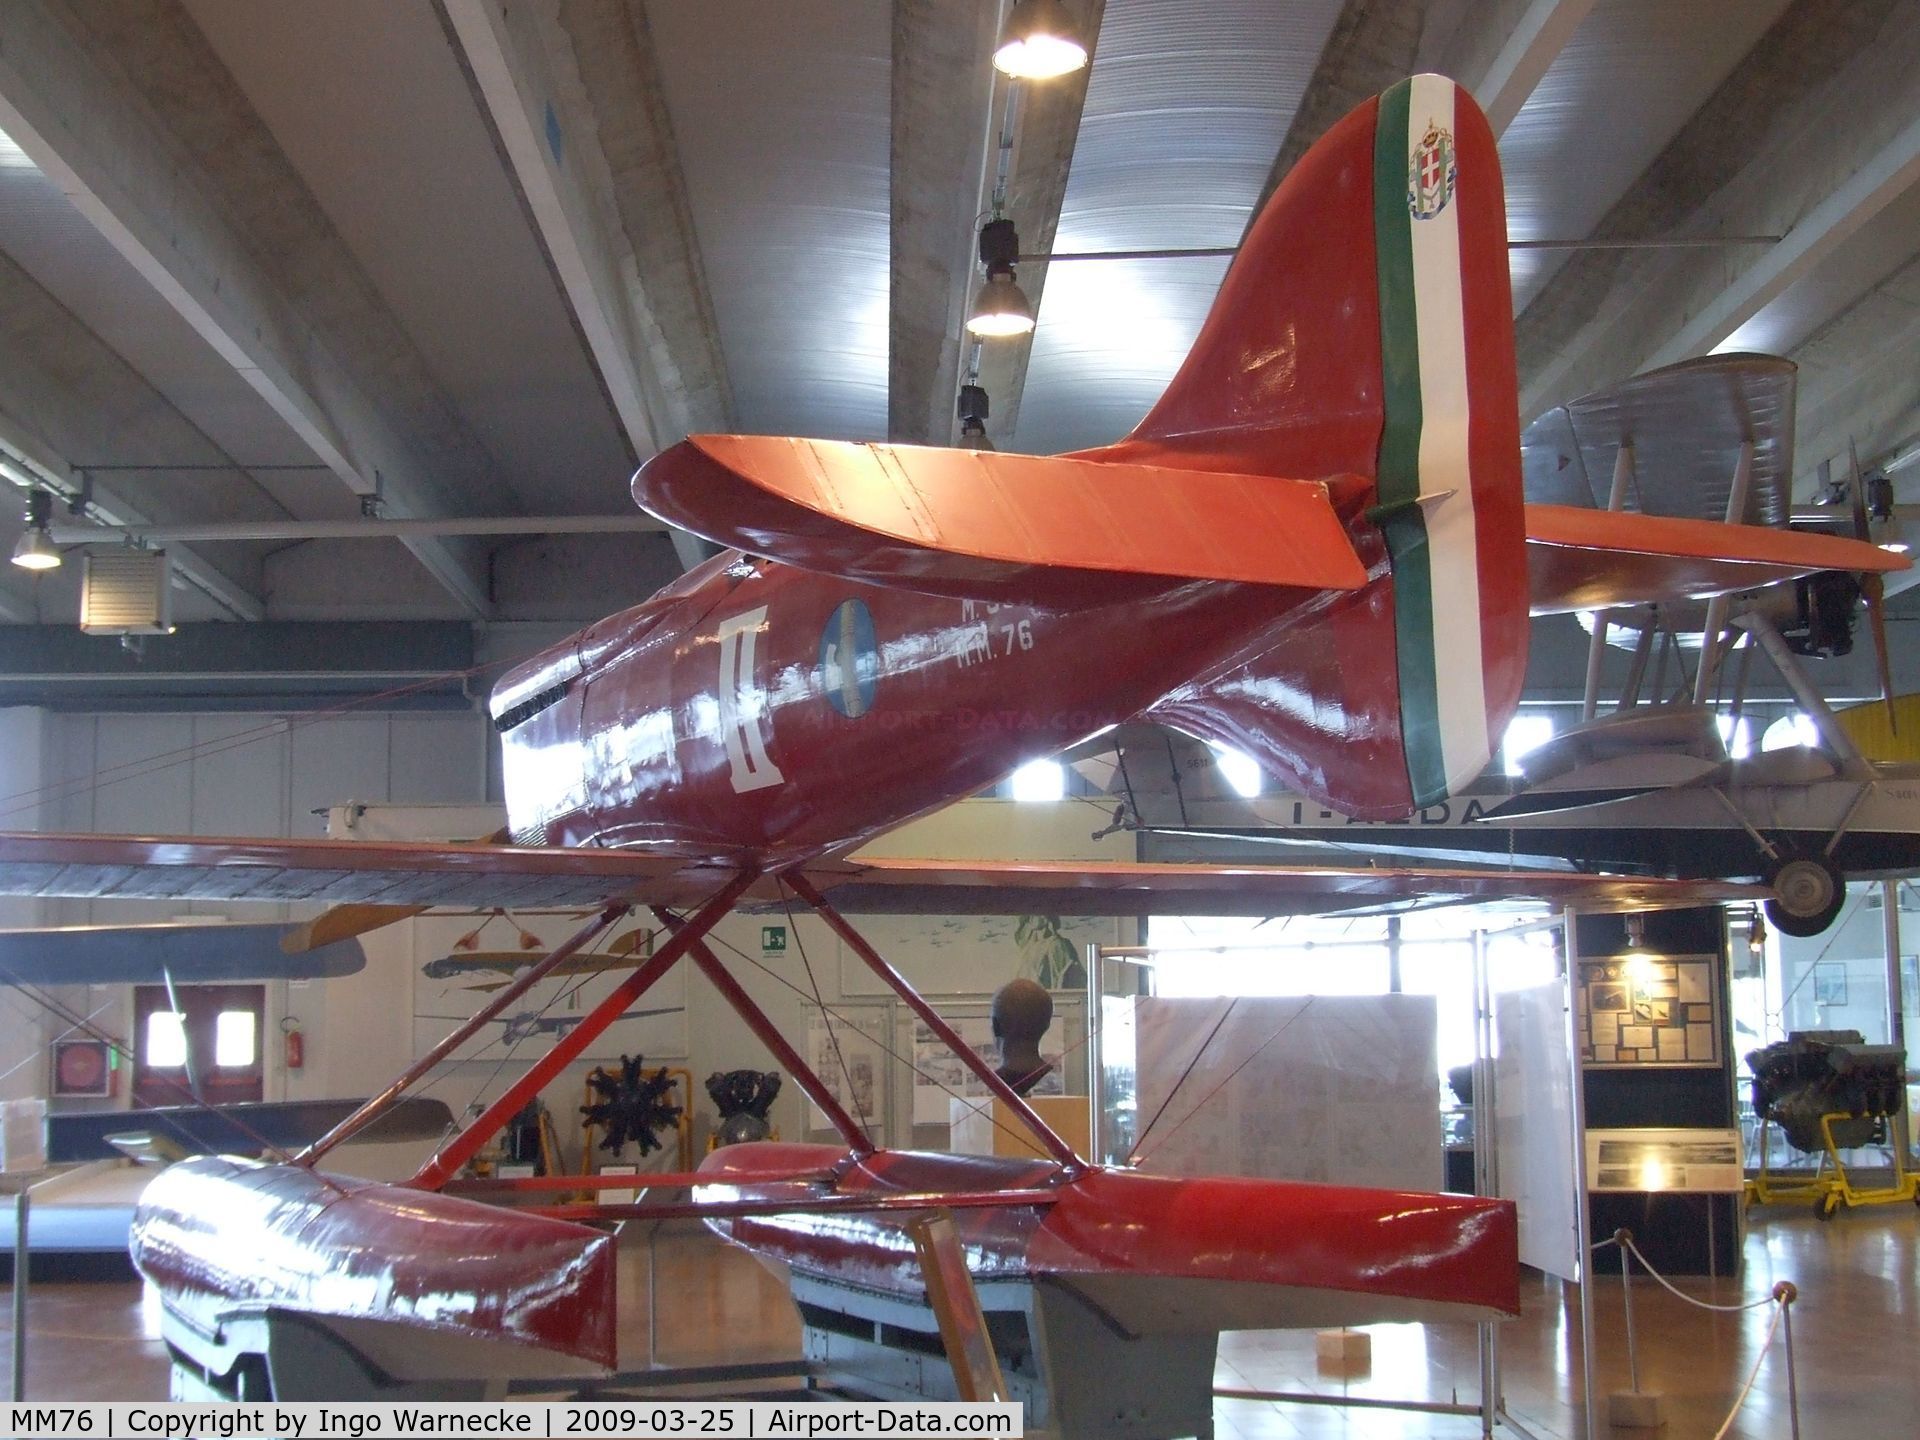 MM76, 1926 Maachi M.39 C/N 5, Macchi M.39 at the Museo storico dell'Aeronautica Militare, Vigna di Valle